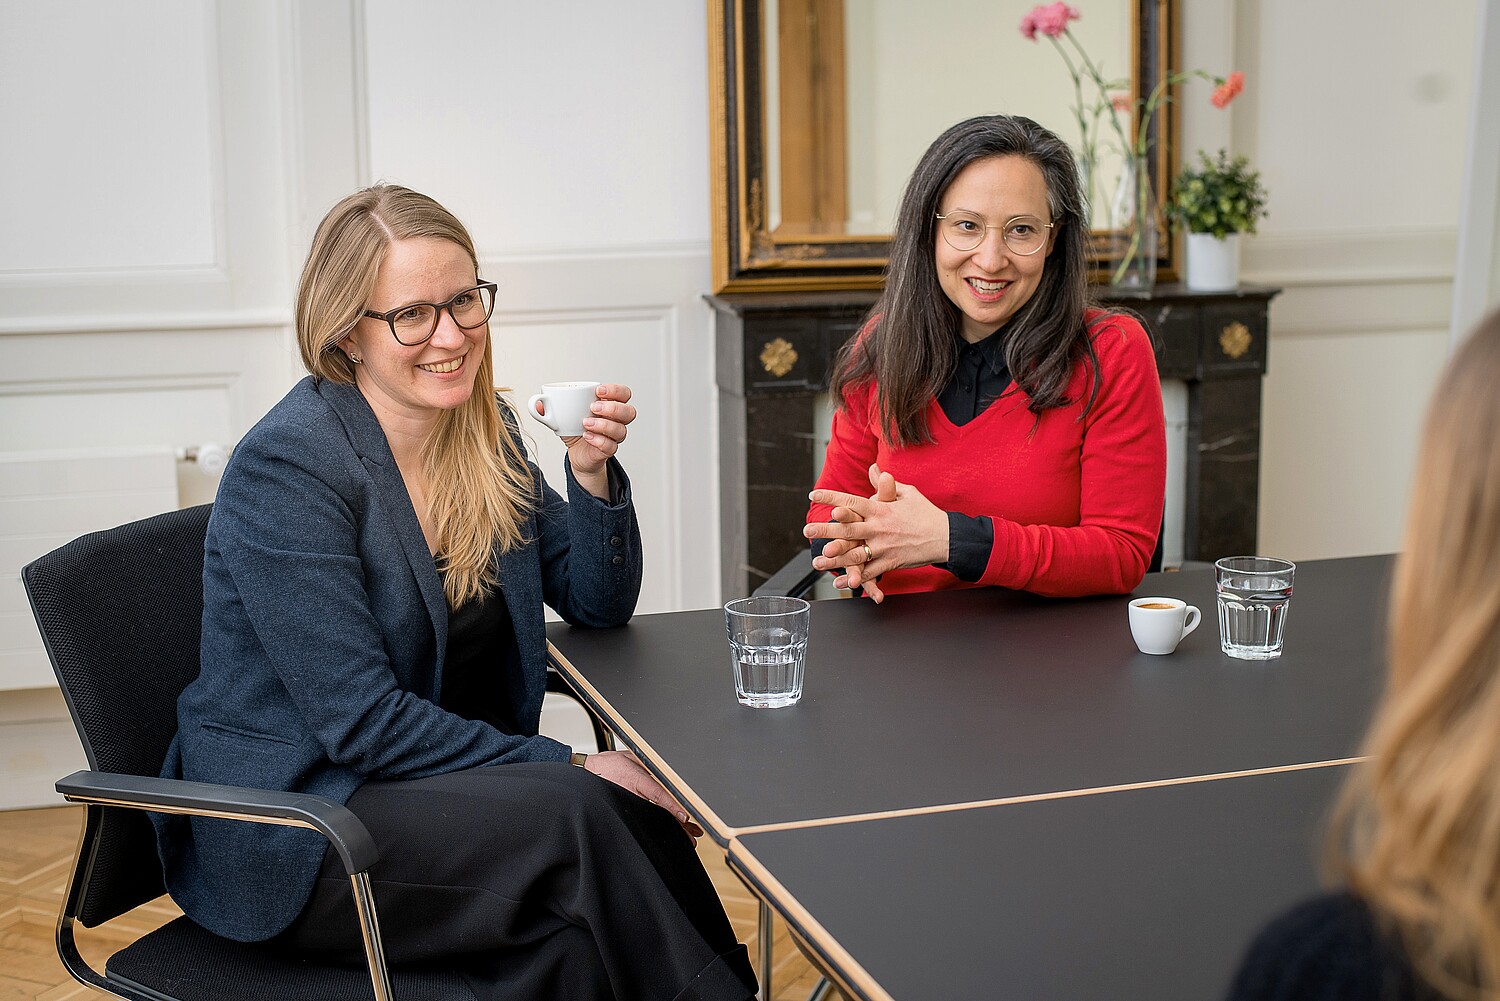 Noora Buser und Frederike Asael, zwei Managing Partner Impact Hub Bern, im Gespräch.